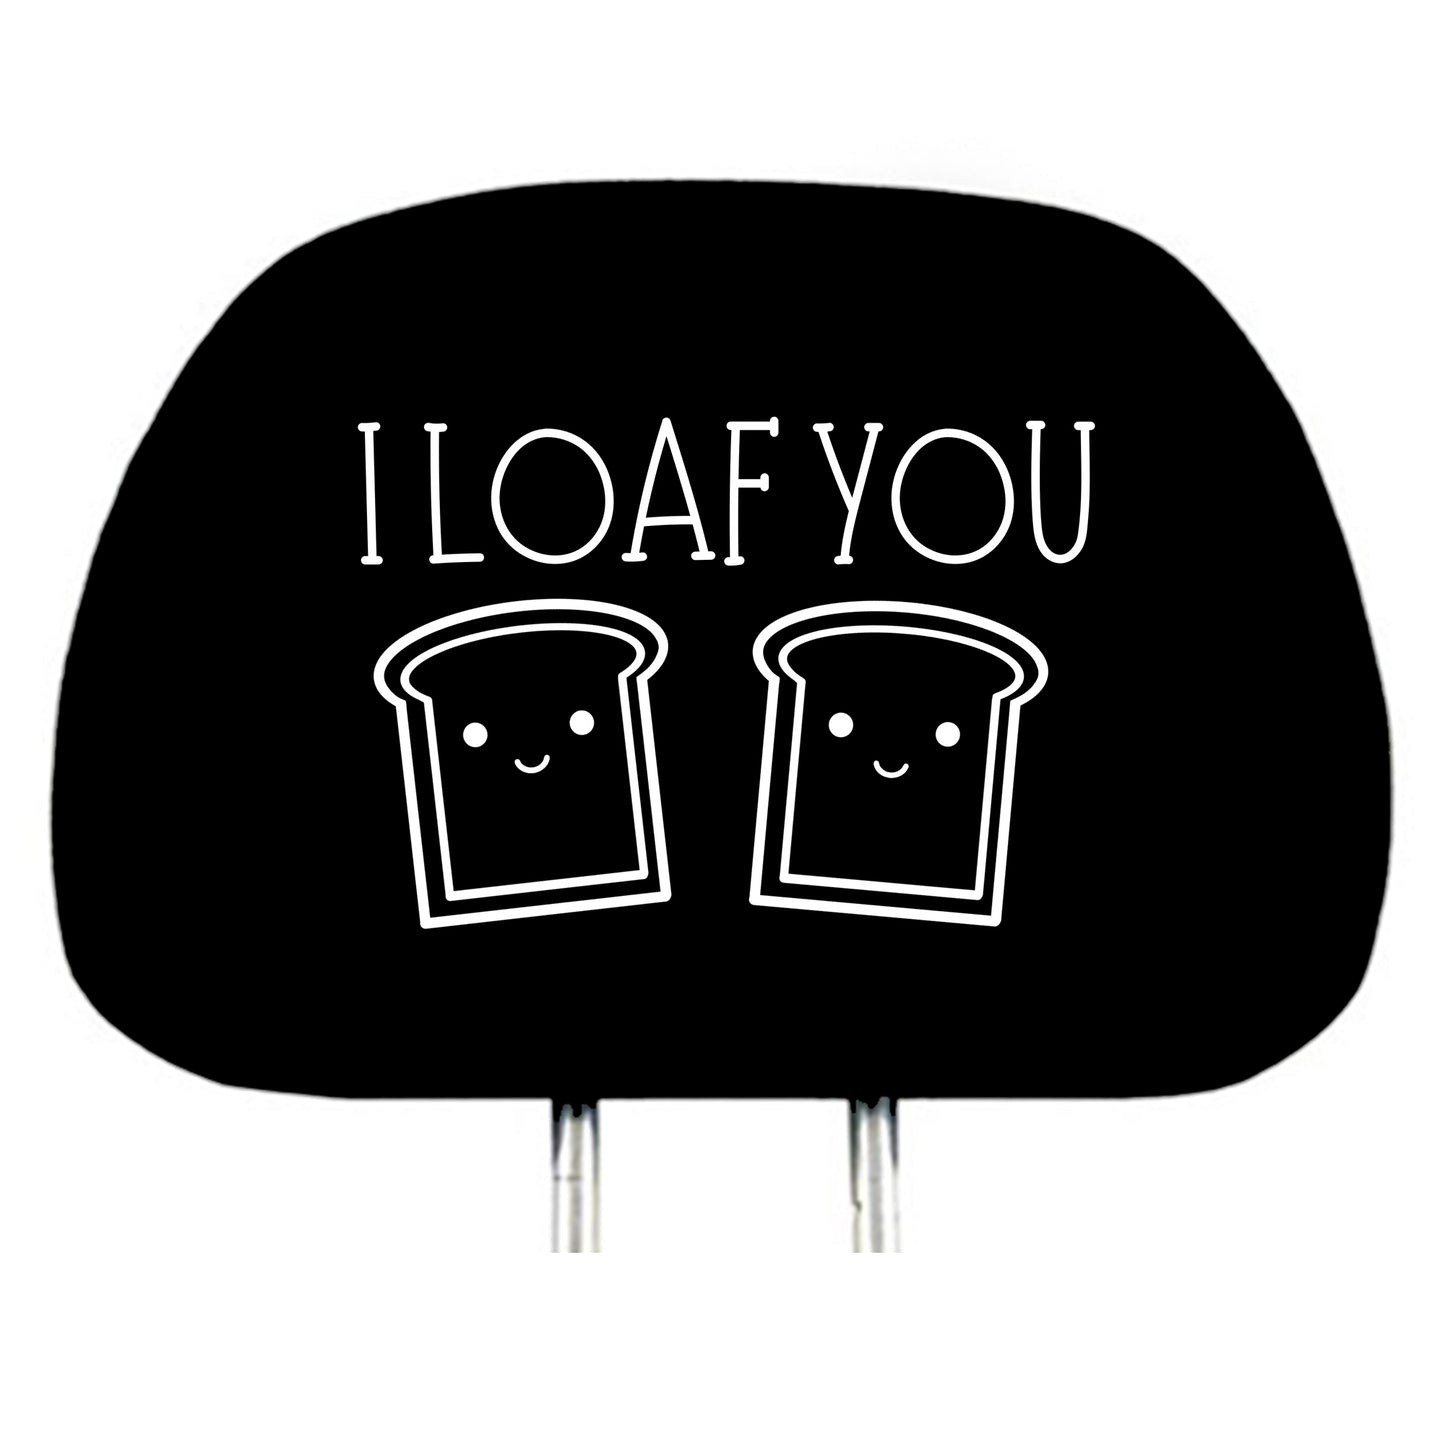 I Loaf You design headrest cover single